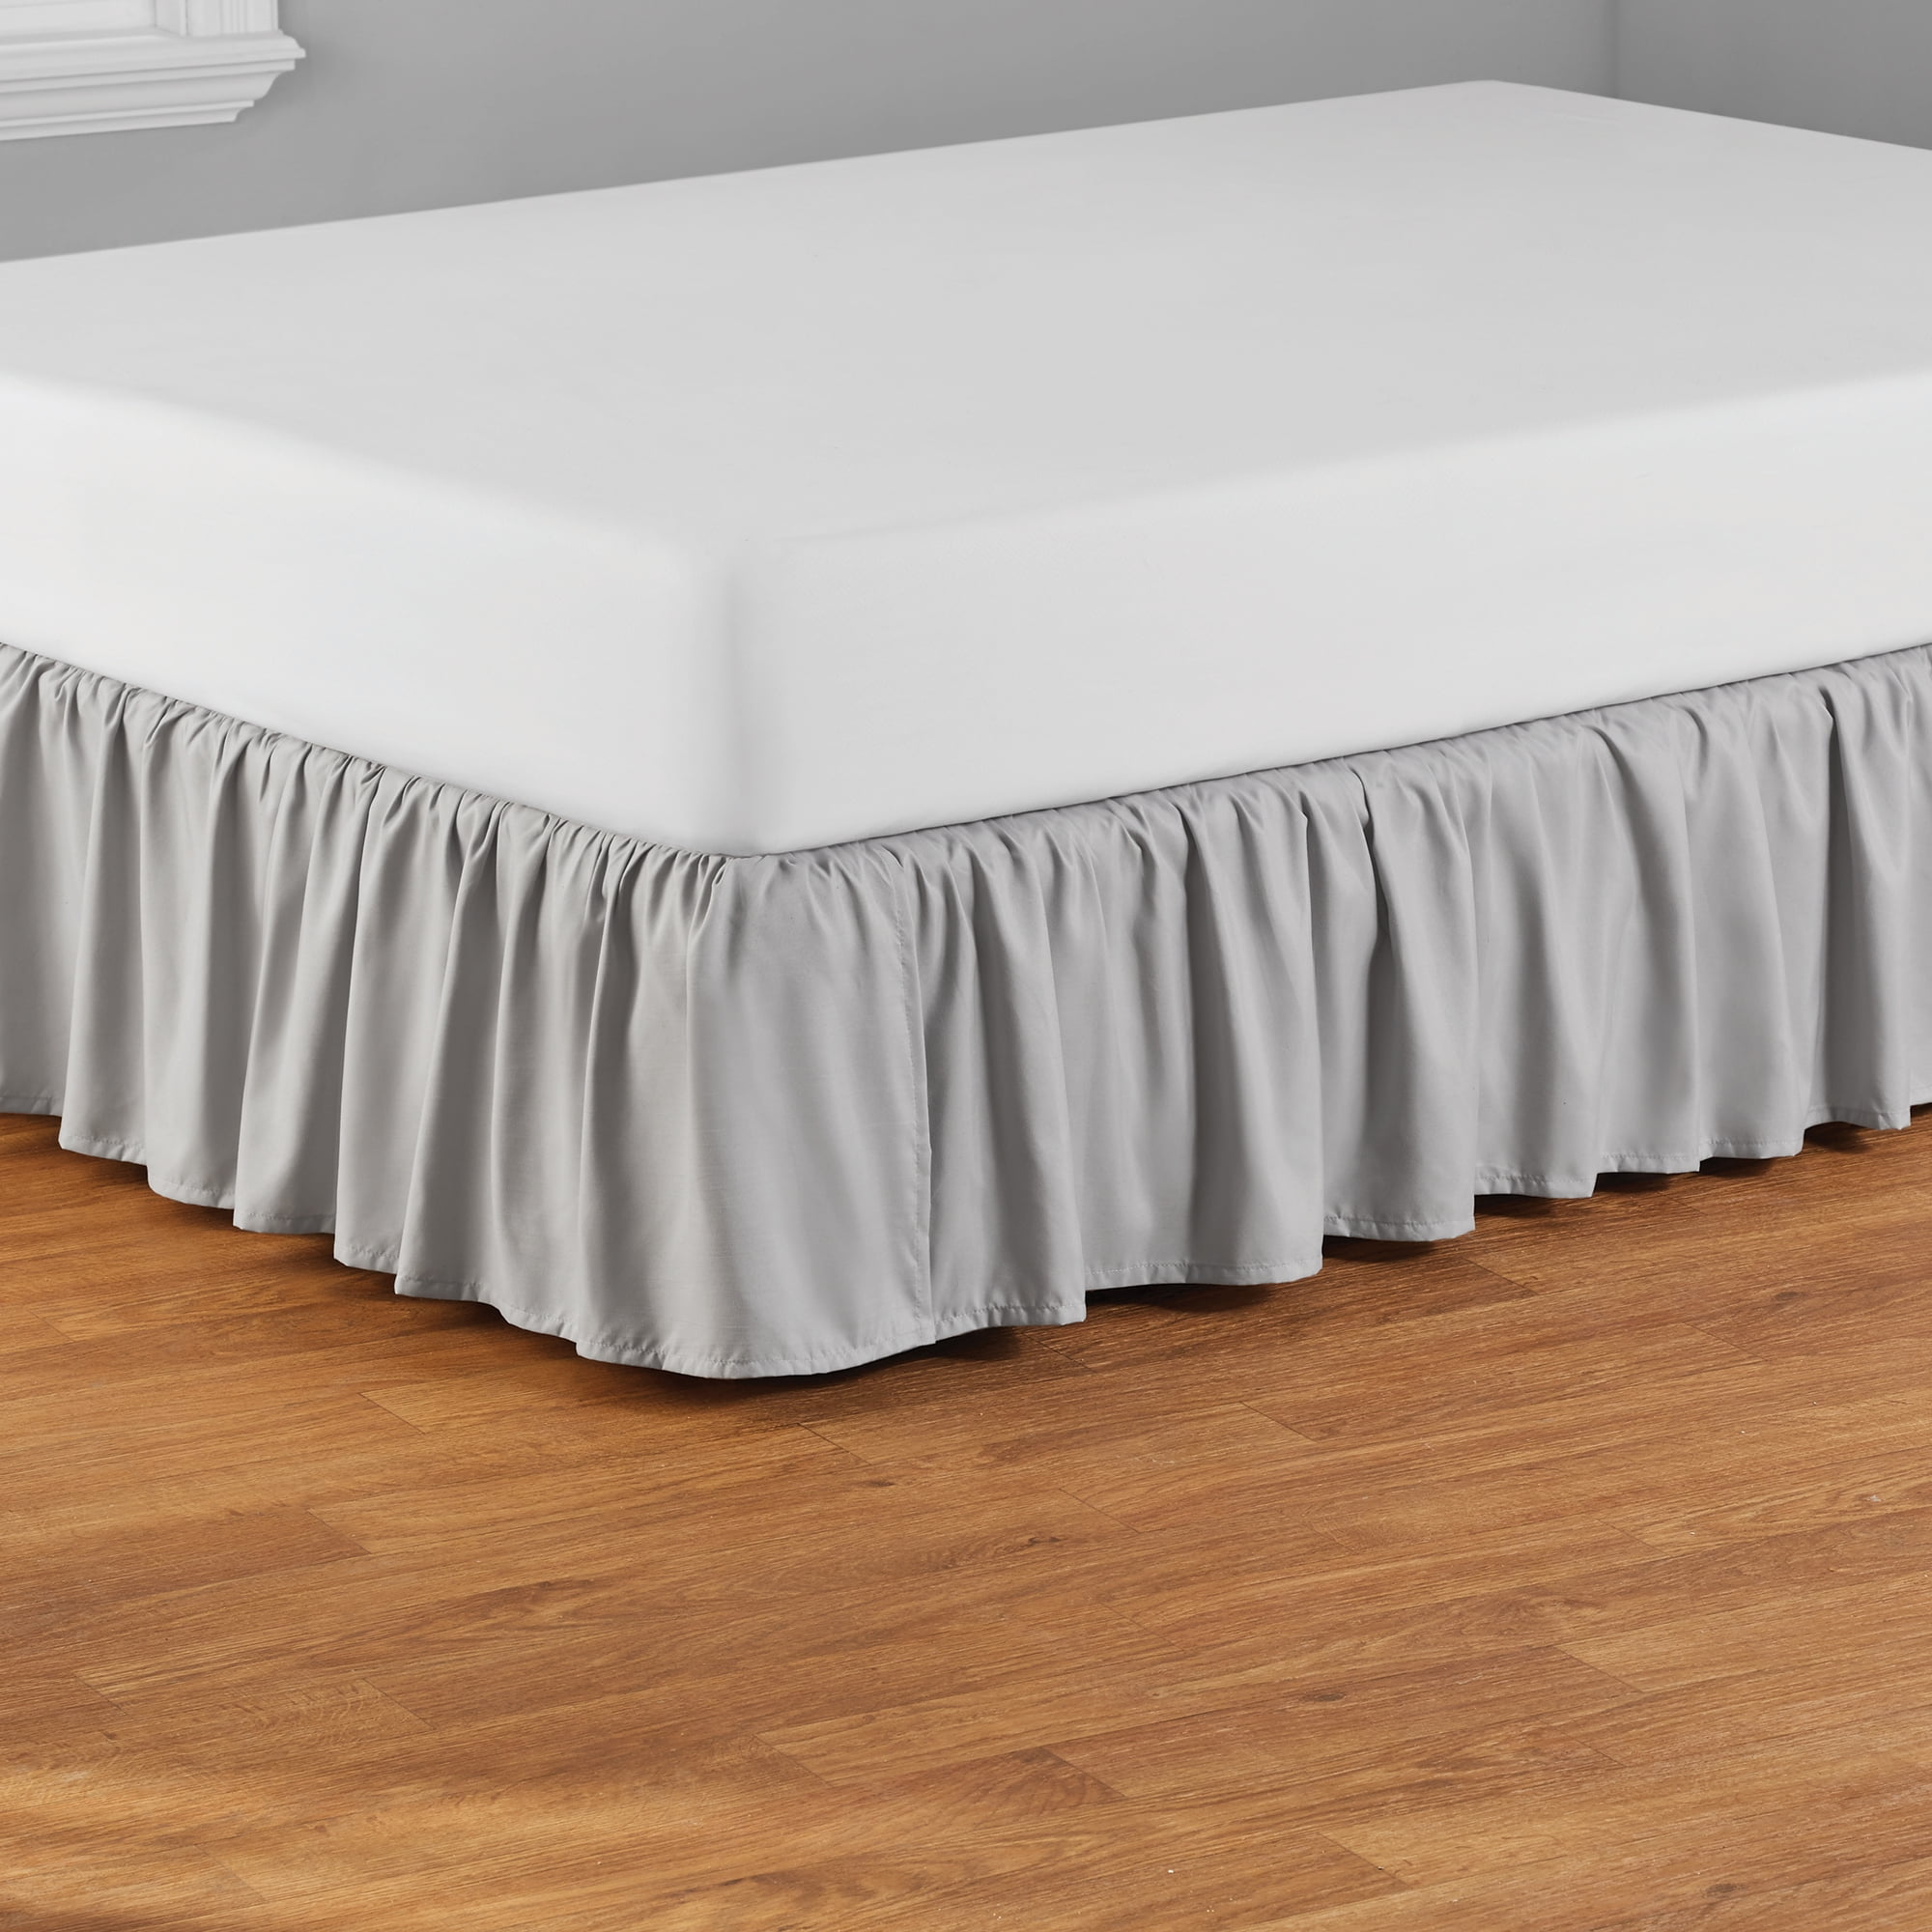 Your Zone Ruffled Microfiber Bed Skirt, Grey, Full/Queen - Walmart.com